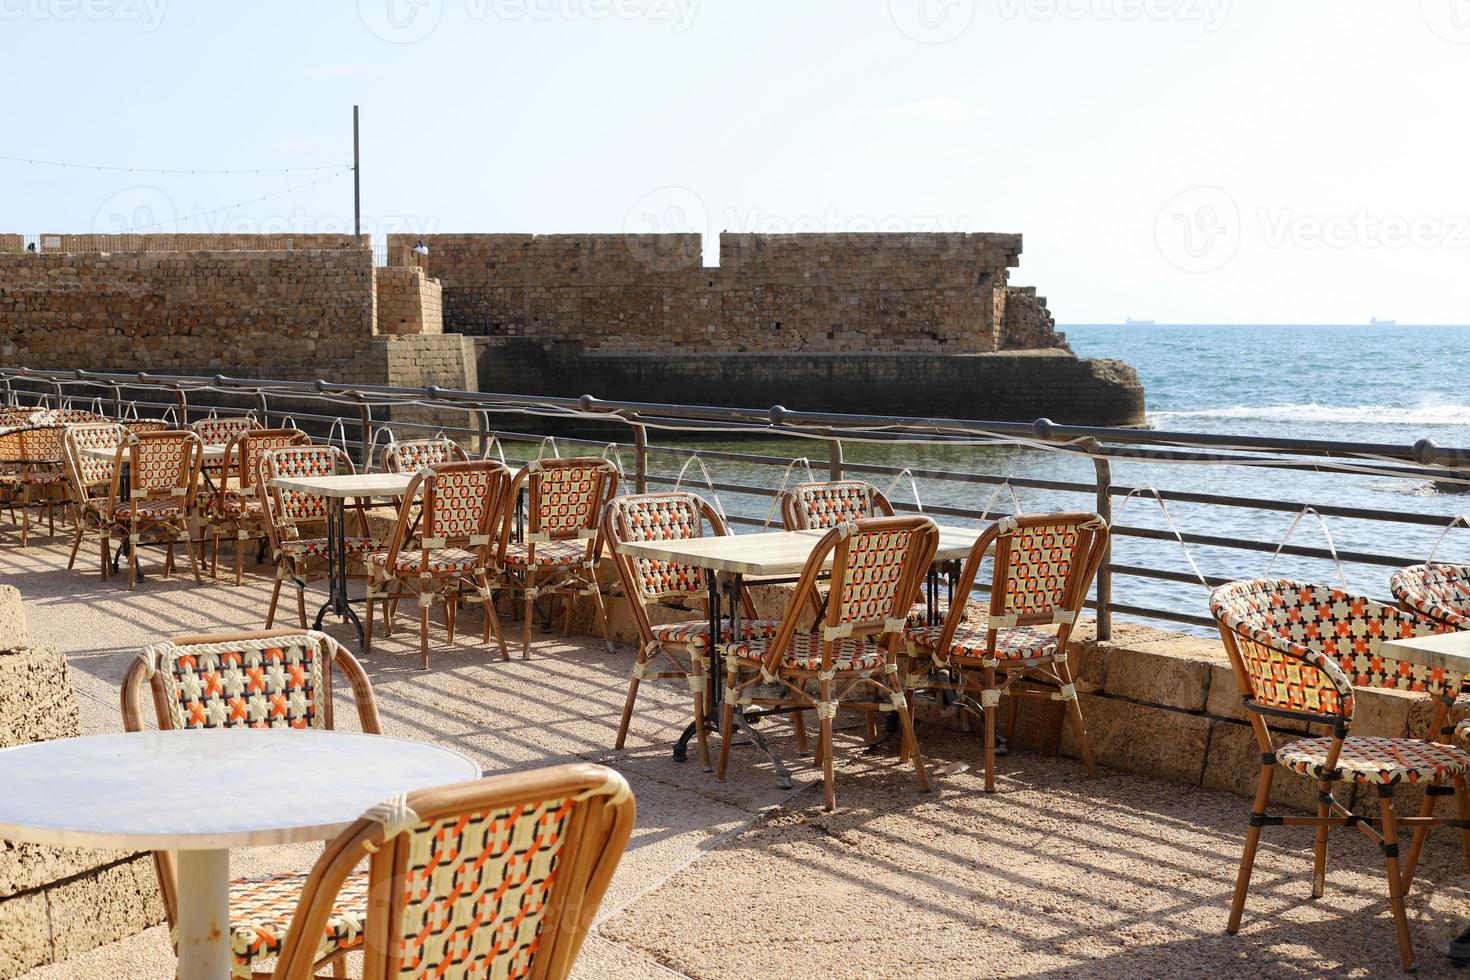 silla y mesa en un café de la costa mediterránea foto